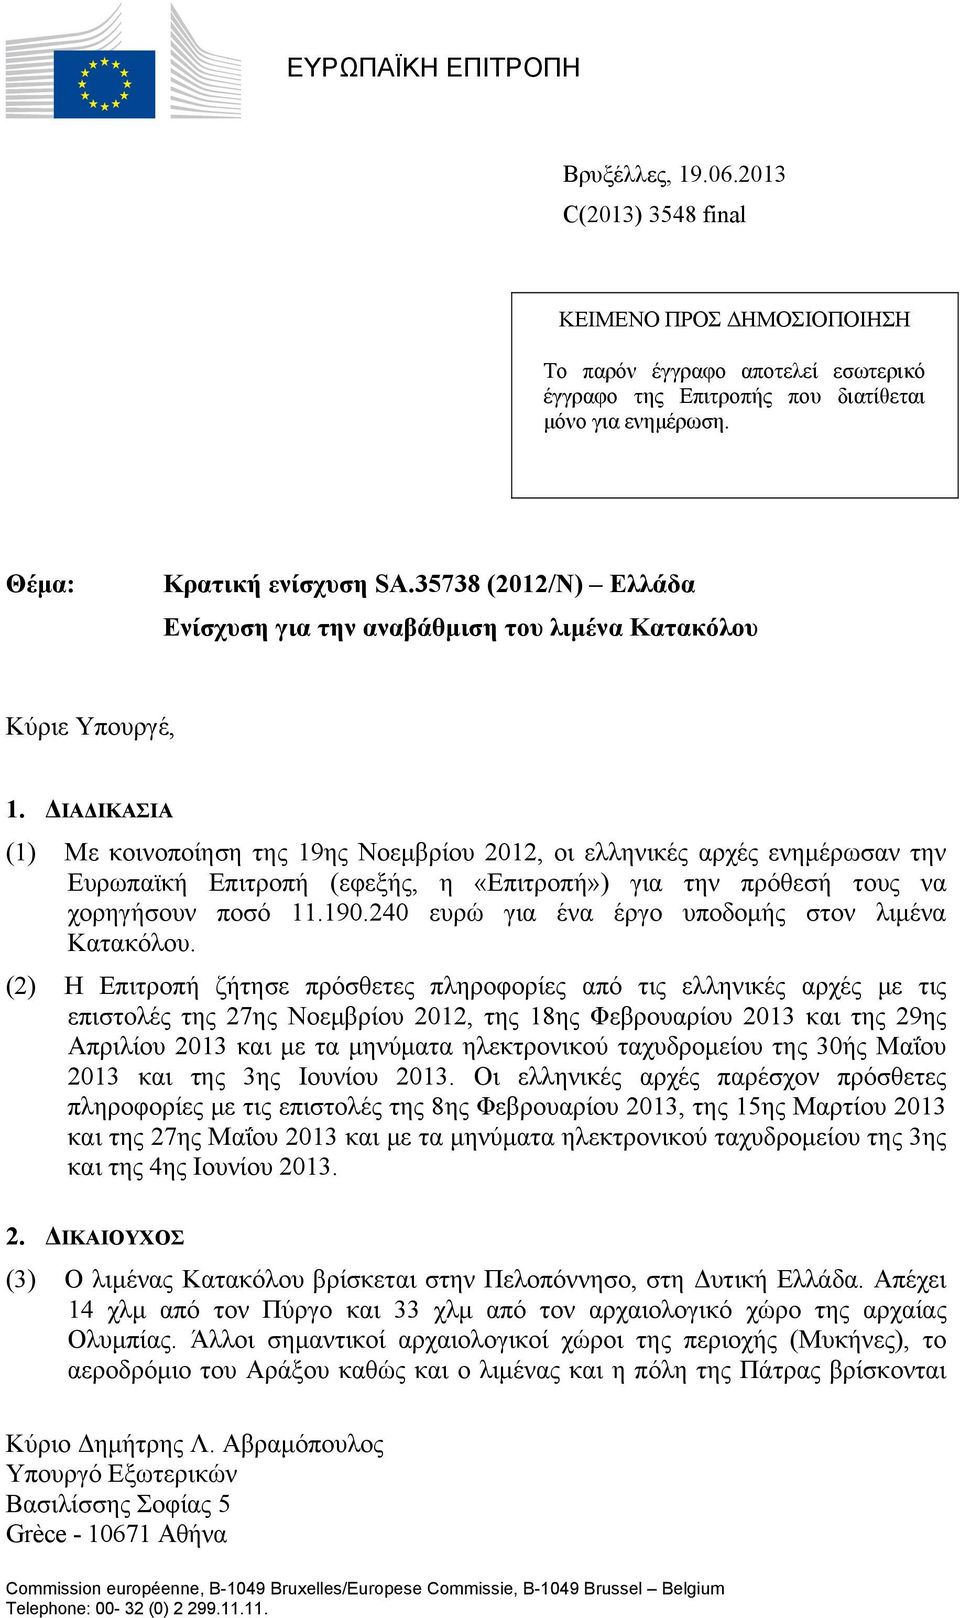 ΔΙΑΔΙΚΑΣΙΑ (1) Με κοινοποίηση της 19ης Νοεμβρίου 2012, οι ελληνικές αρχές ενημέρωσαν την Ευρωπαϊκή Επιτροπή (εφεξής, η «Επιτροπή») για την πρόθεσή τους να χορηγήσουν ποσό 11.190.